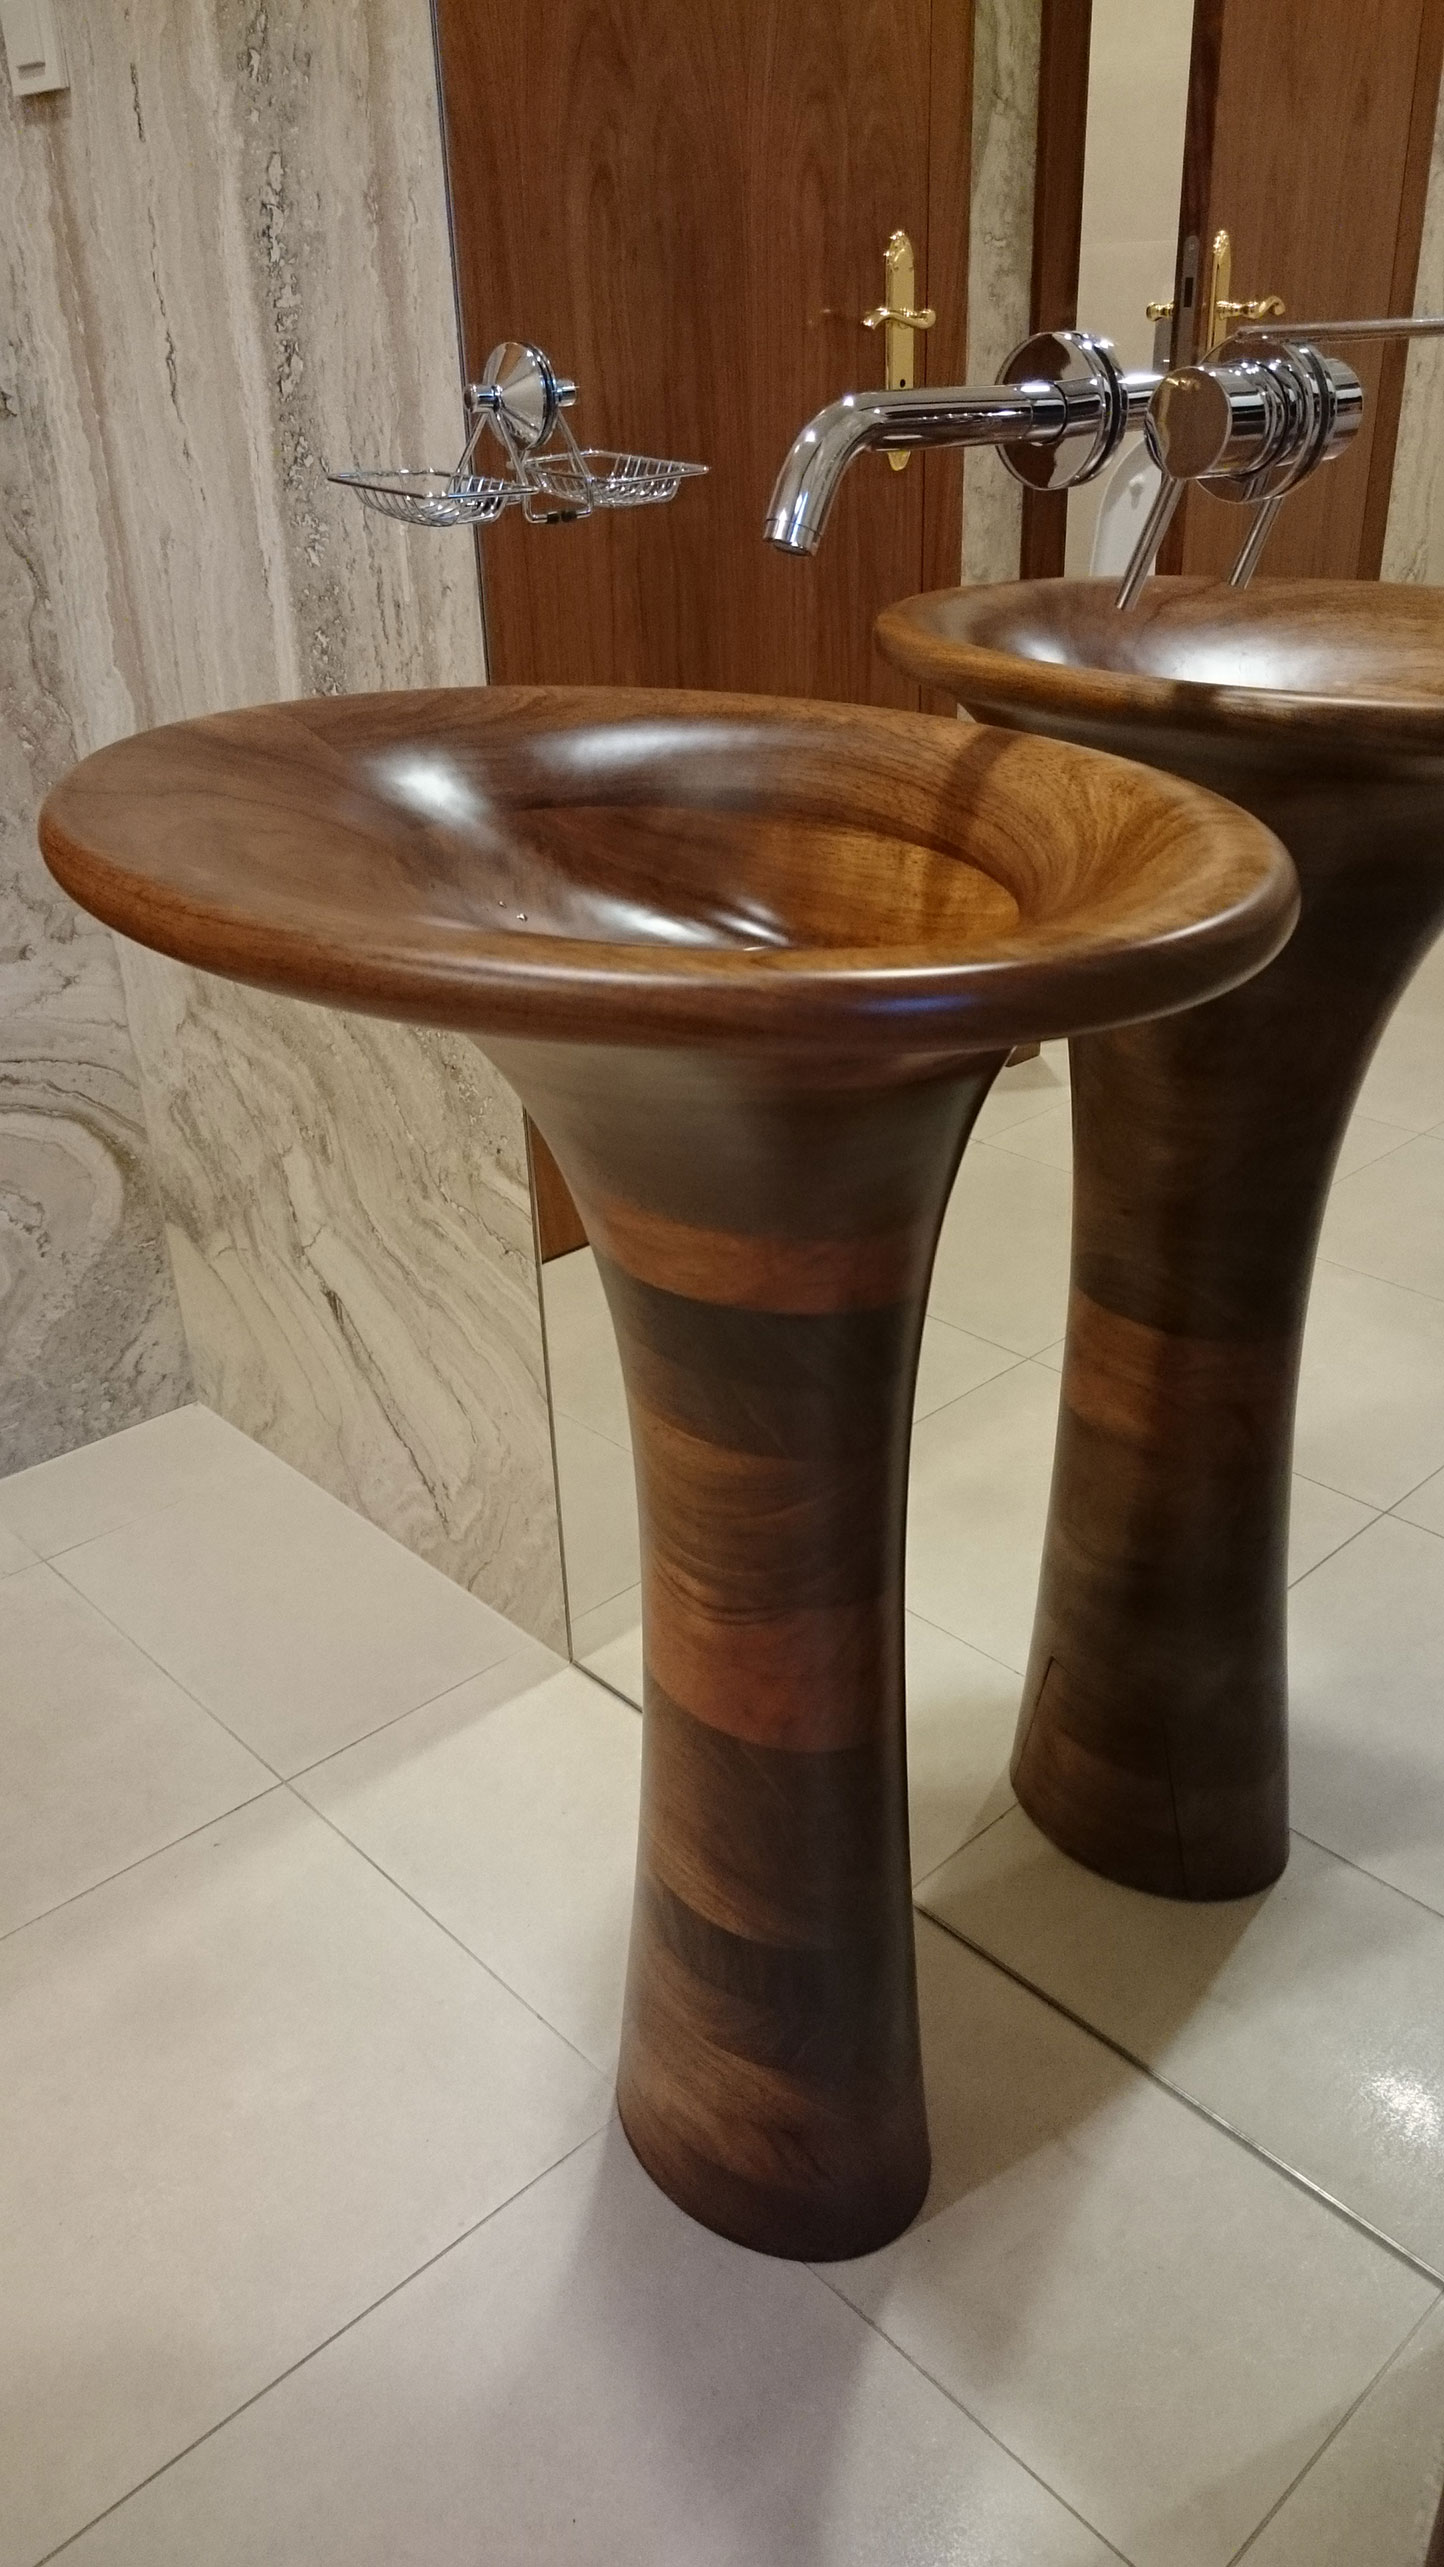 Image no. 2 of Unique Wood Design - Custom wooden washbasin Fuge 